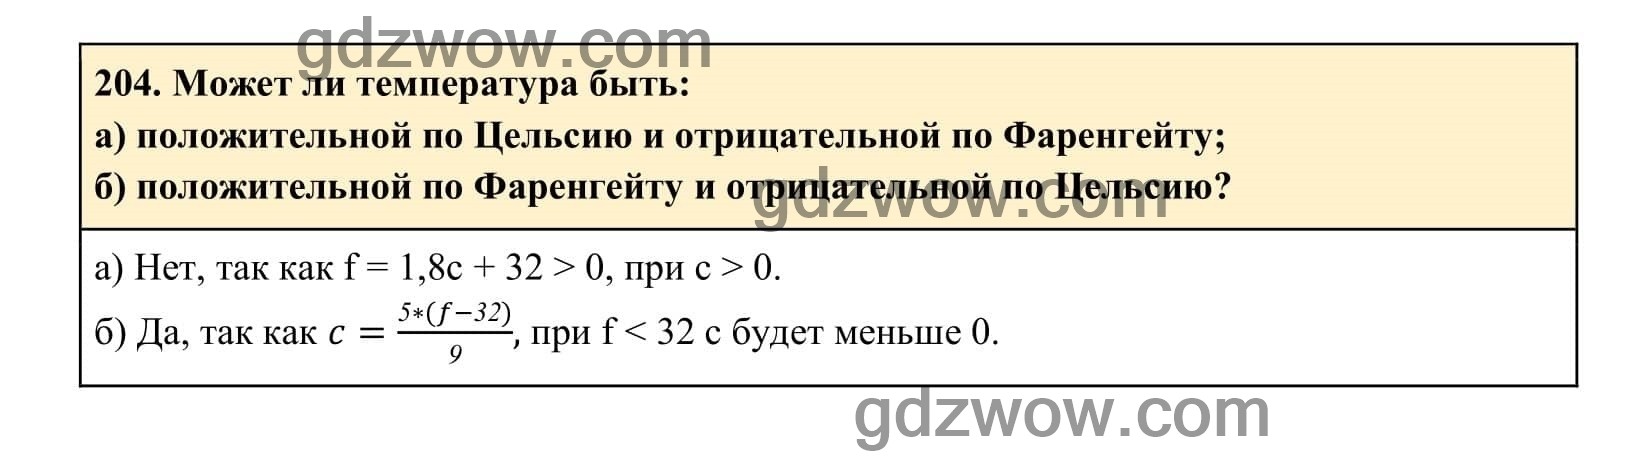 Упражнение 204 - ГДЗ по Алгебре 7 класс Учебник Макарычев (решебник) - GDZwow